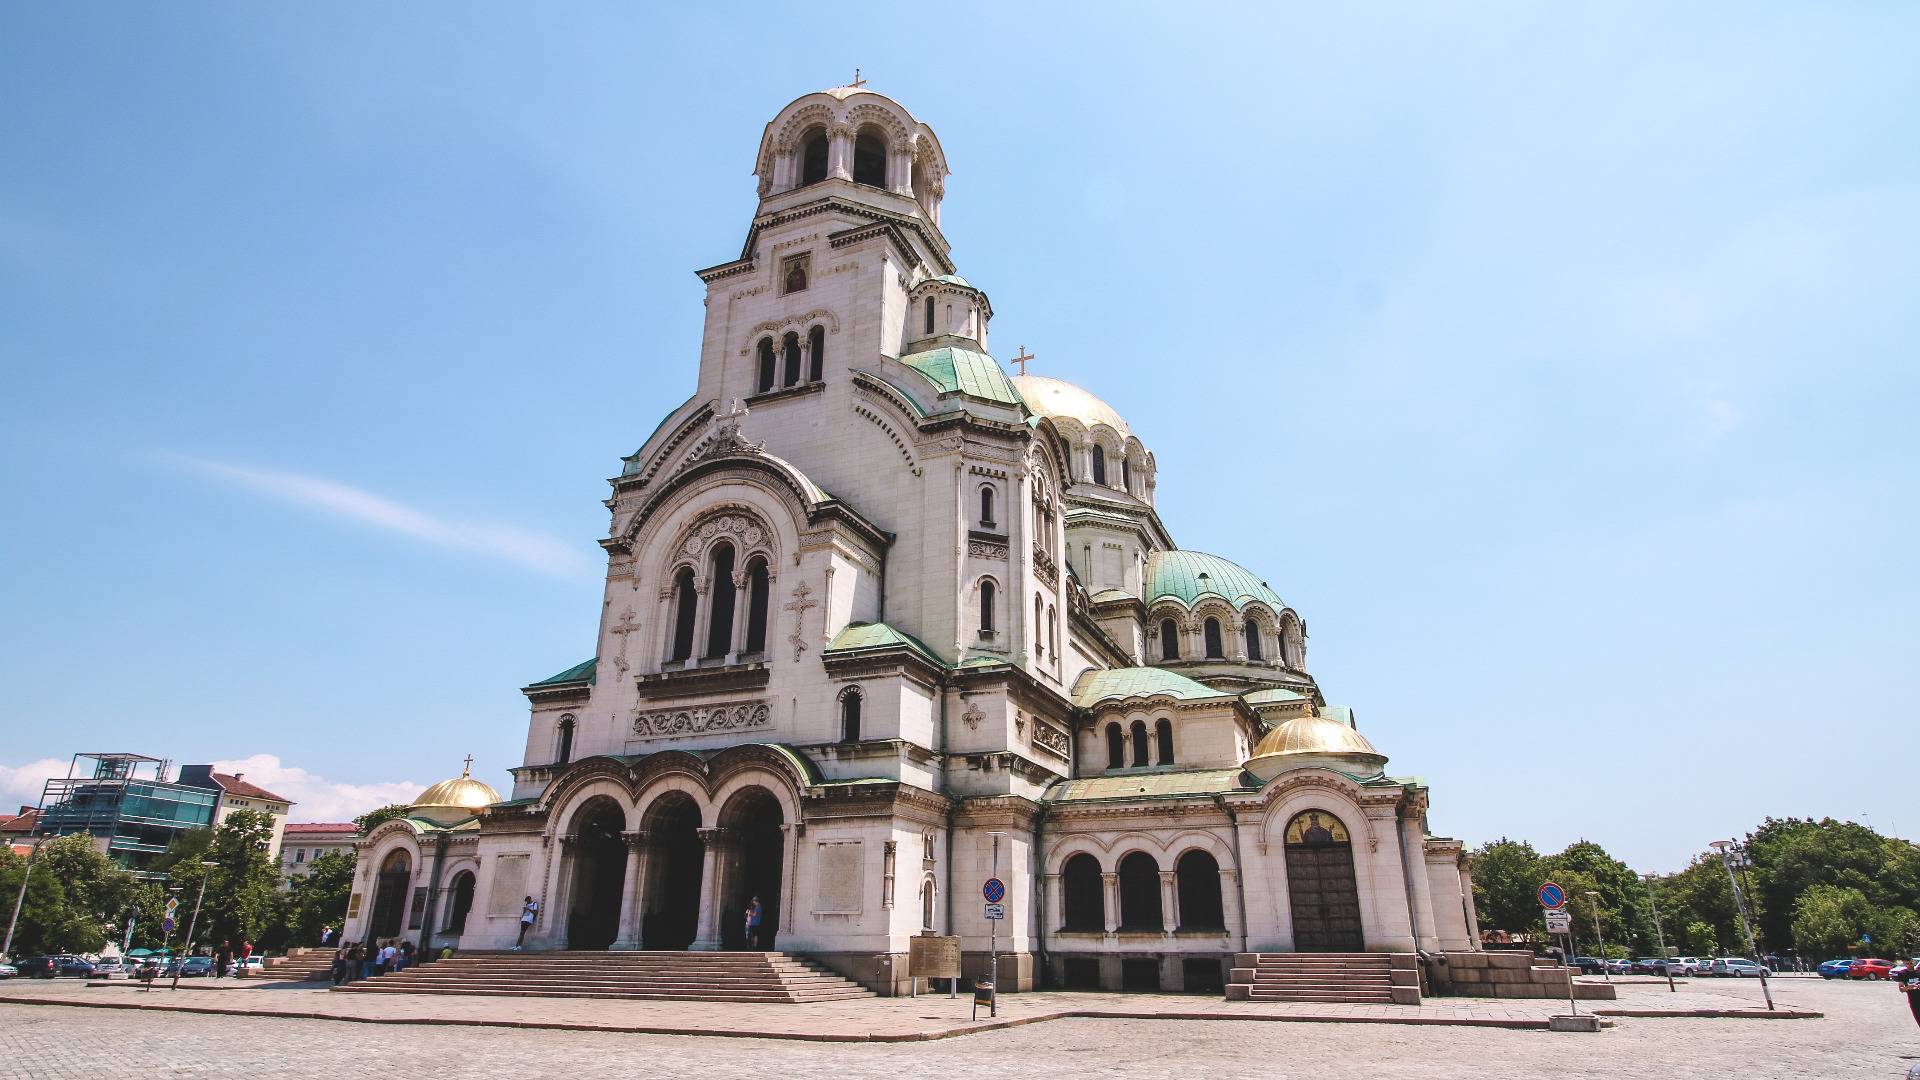 St. Alexander Nevsky Cathedreal. Photo by Wander Spot Explore ©